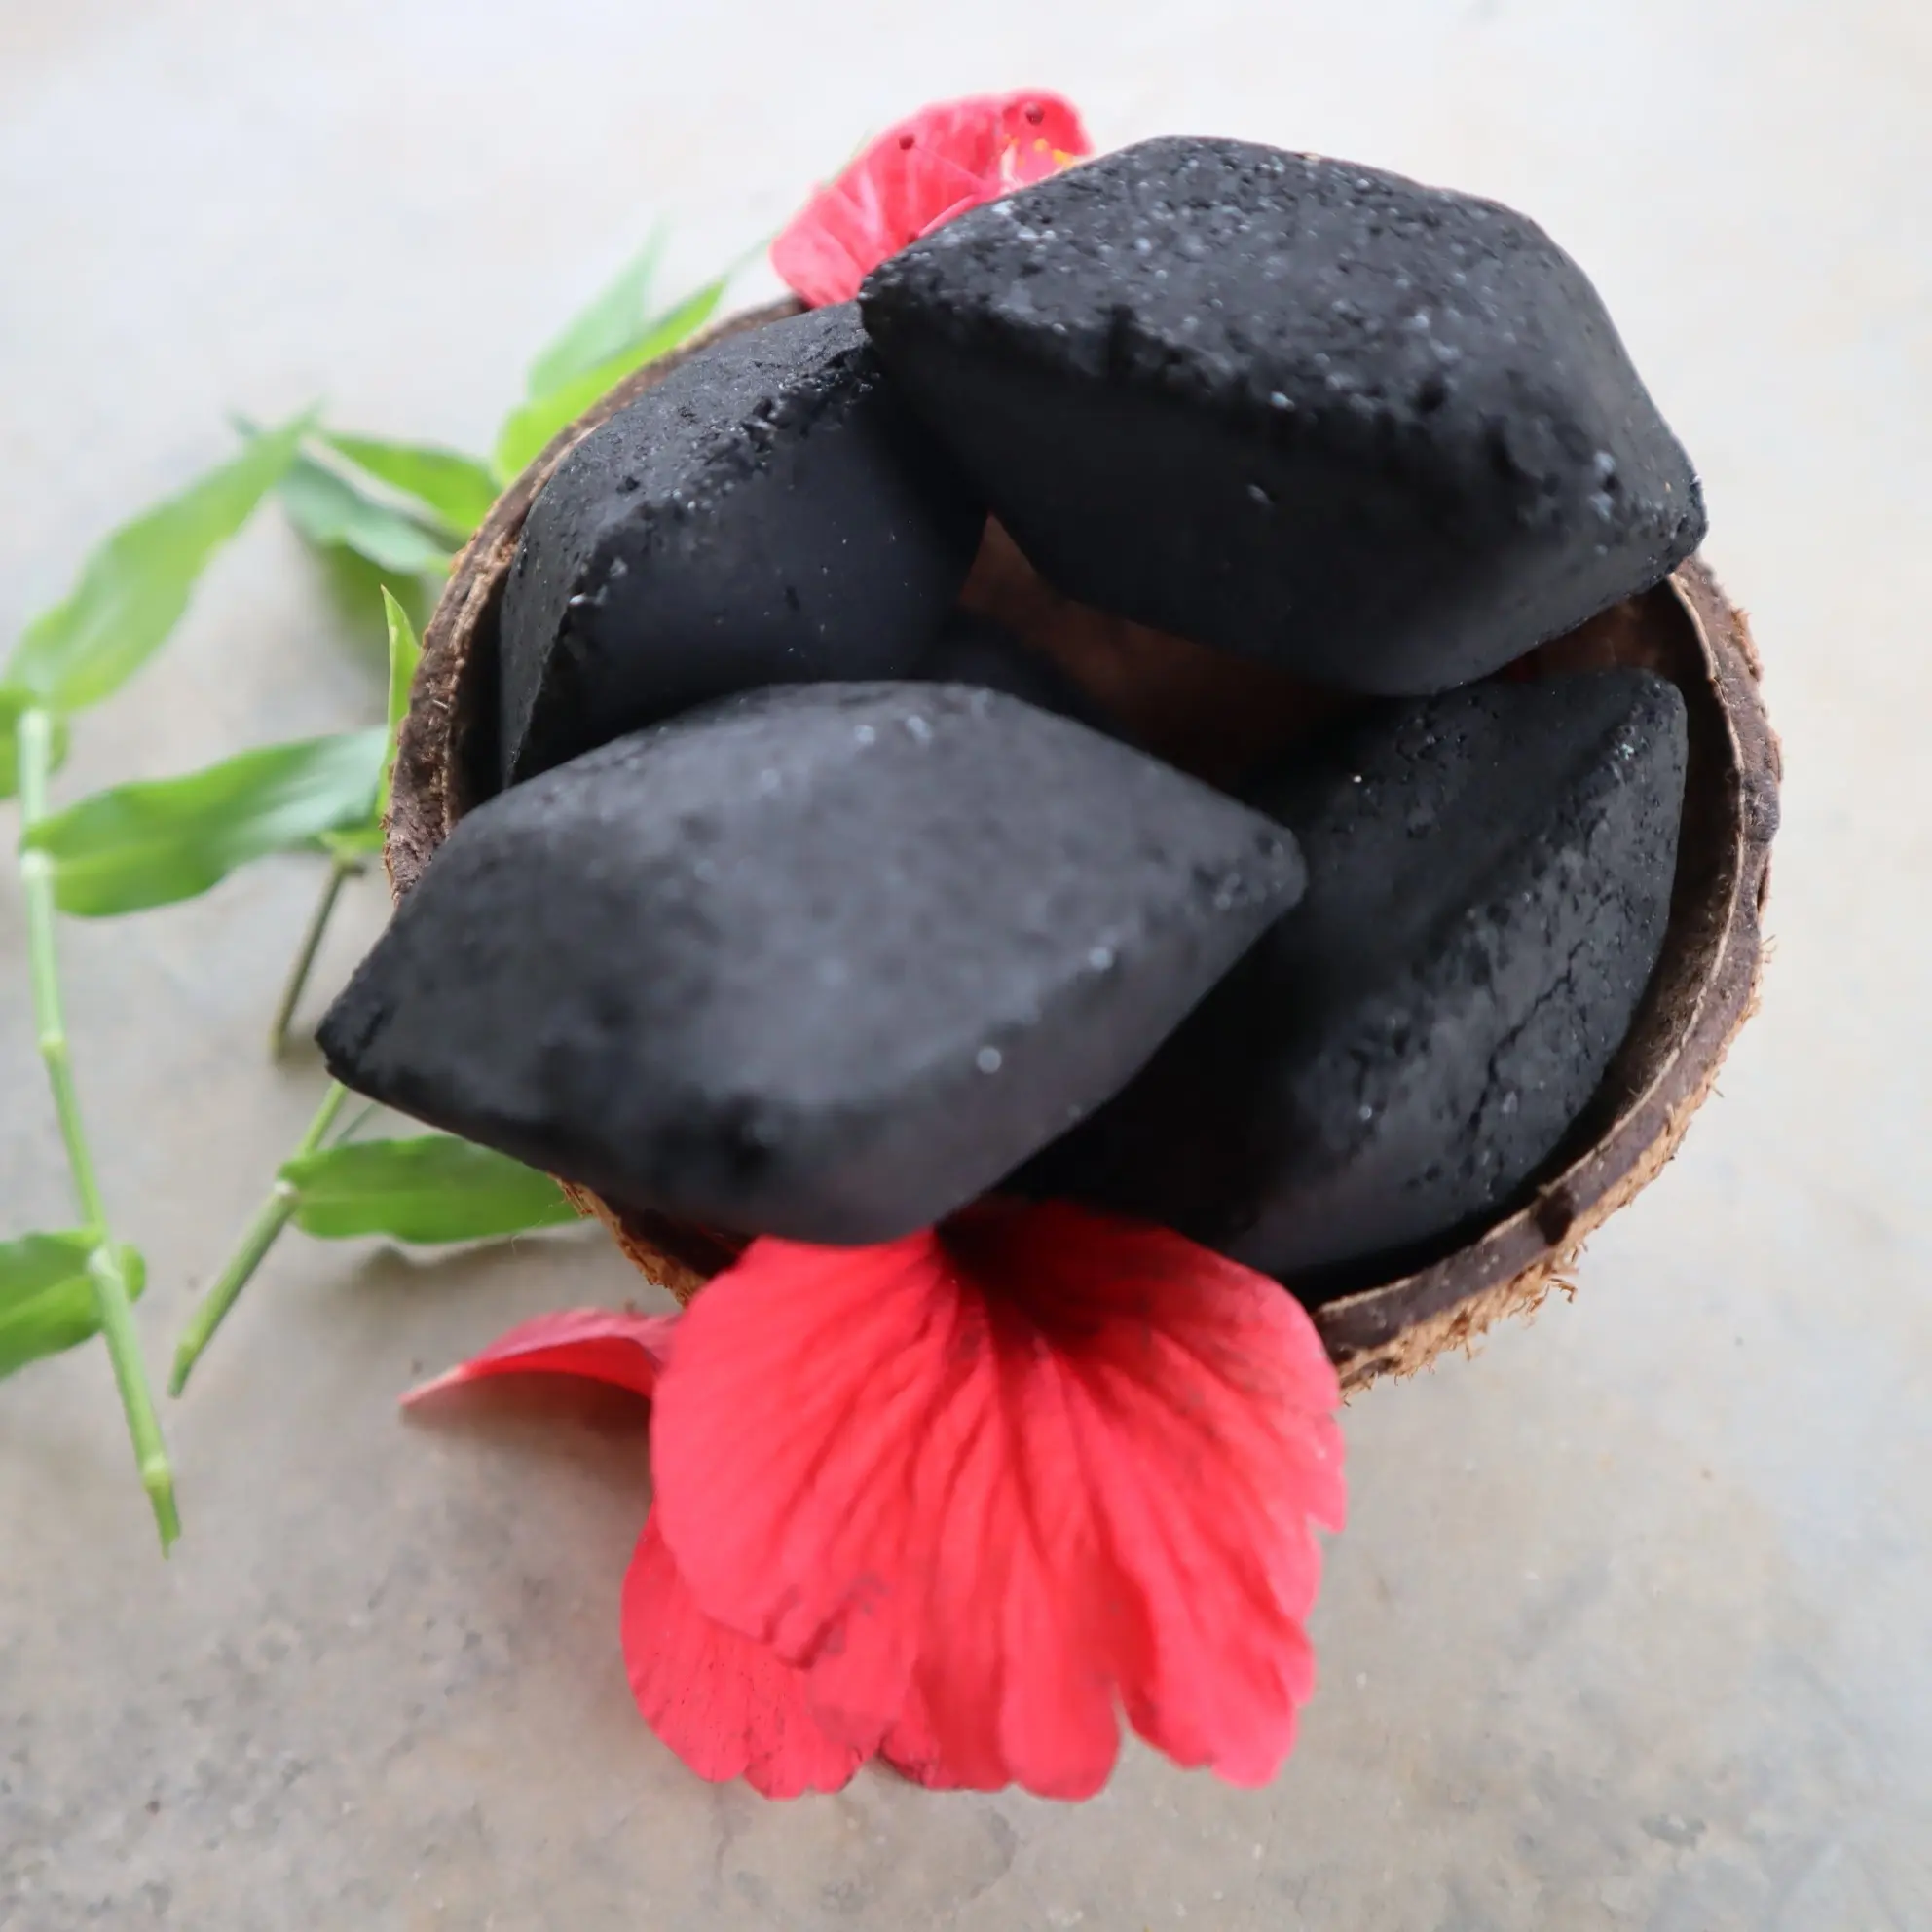 Divertiti le tue vacanze con bricchette di carbone di noce di cocco naturale per grigliare